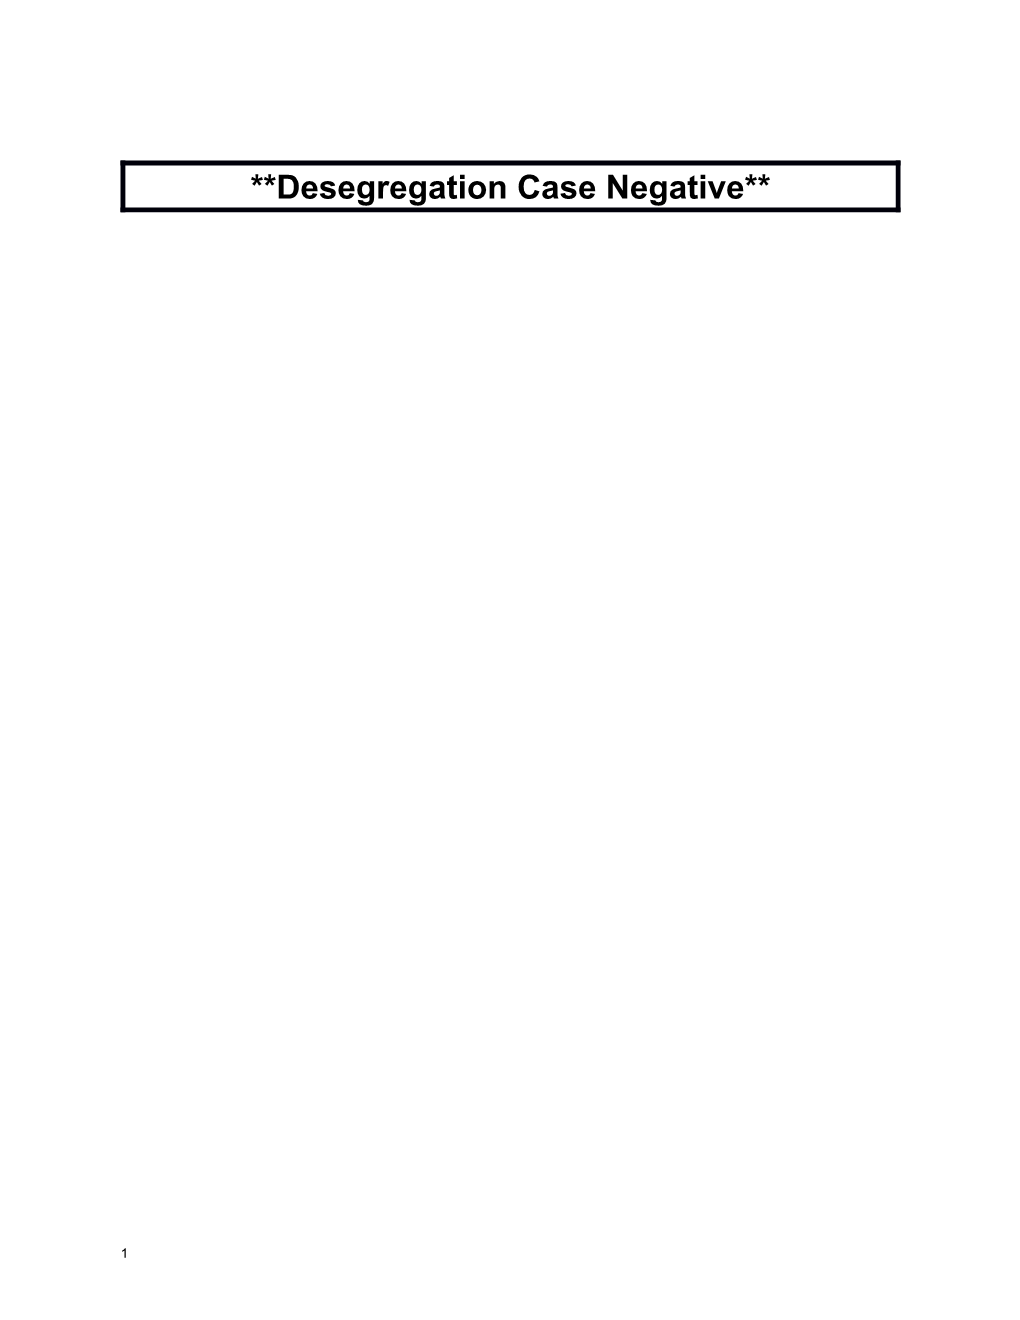 Desegregation Case Negative